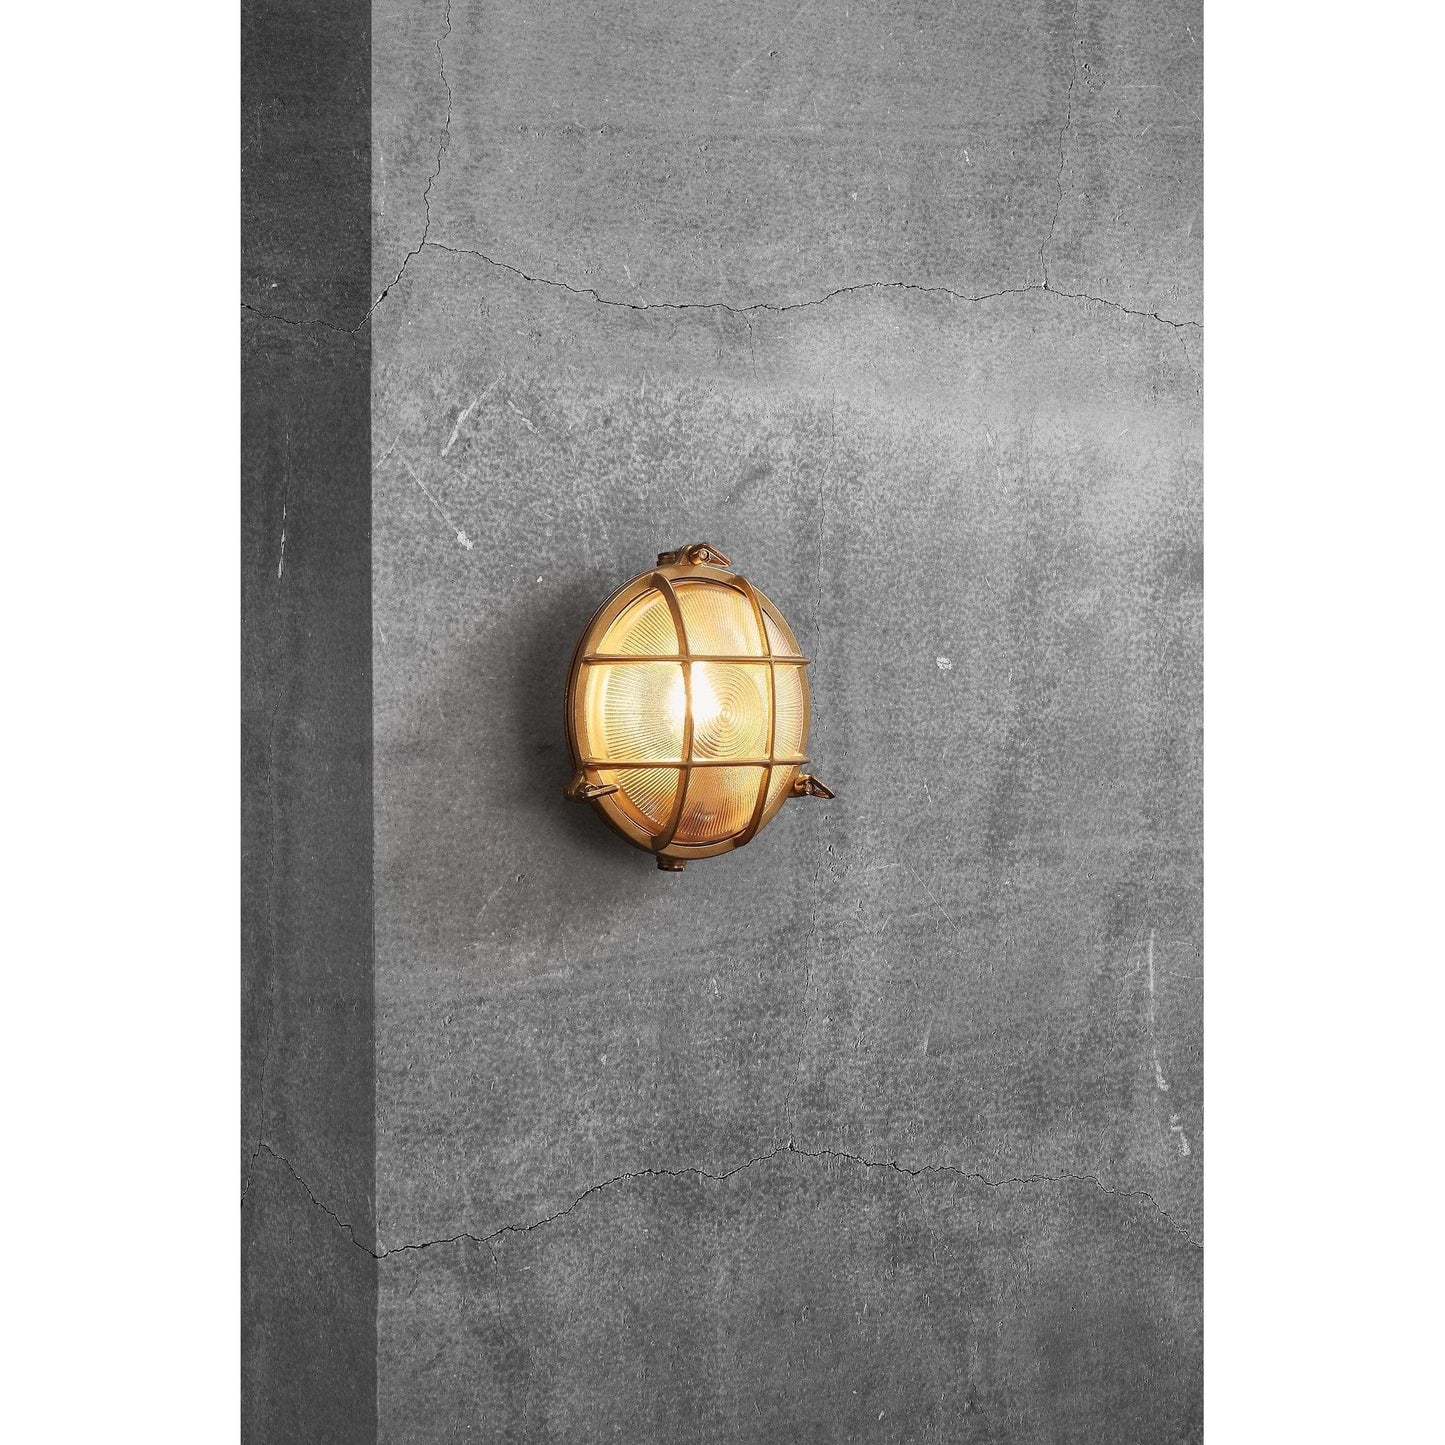 Nordlux Outdoor Lights Polperro Wall Light, brass or nickel